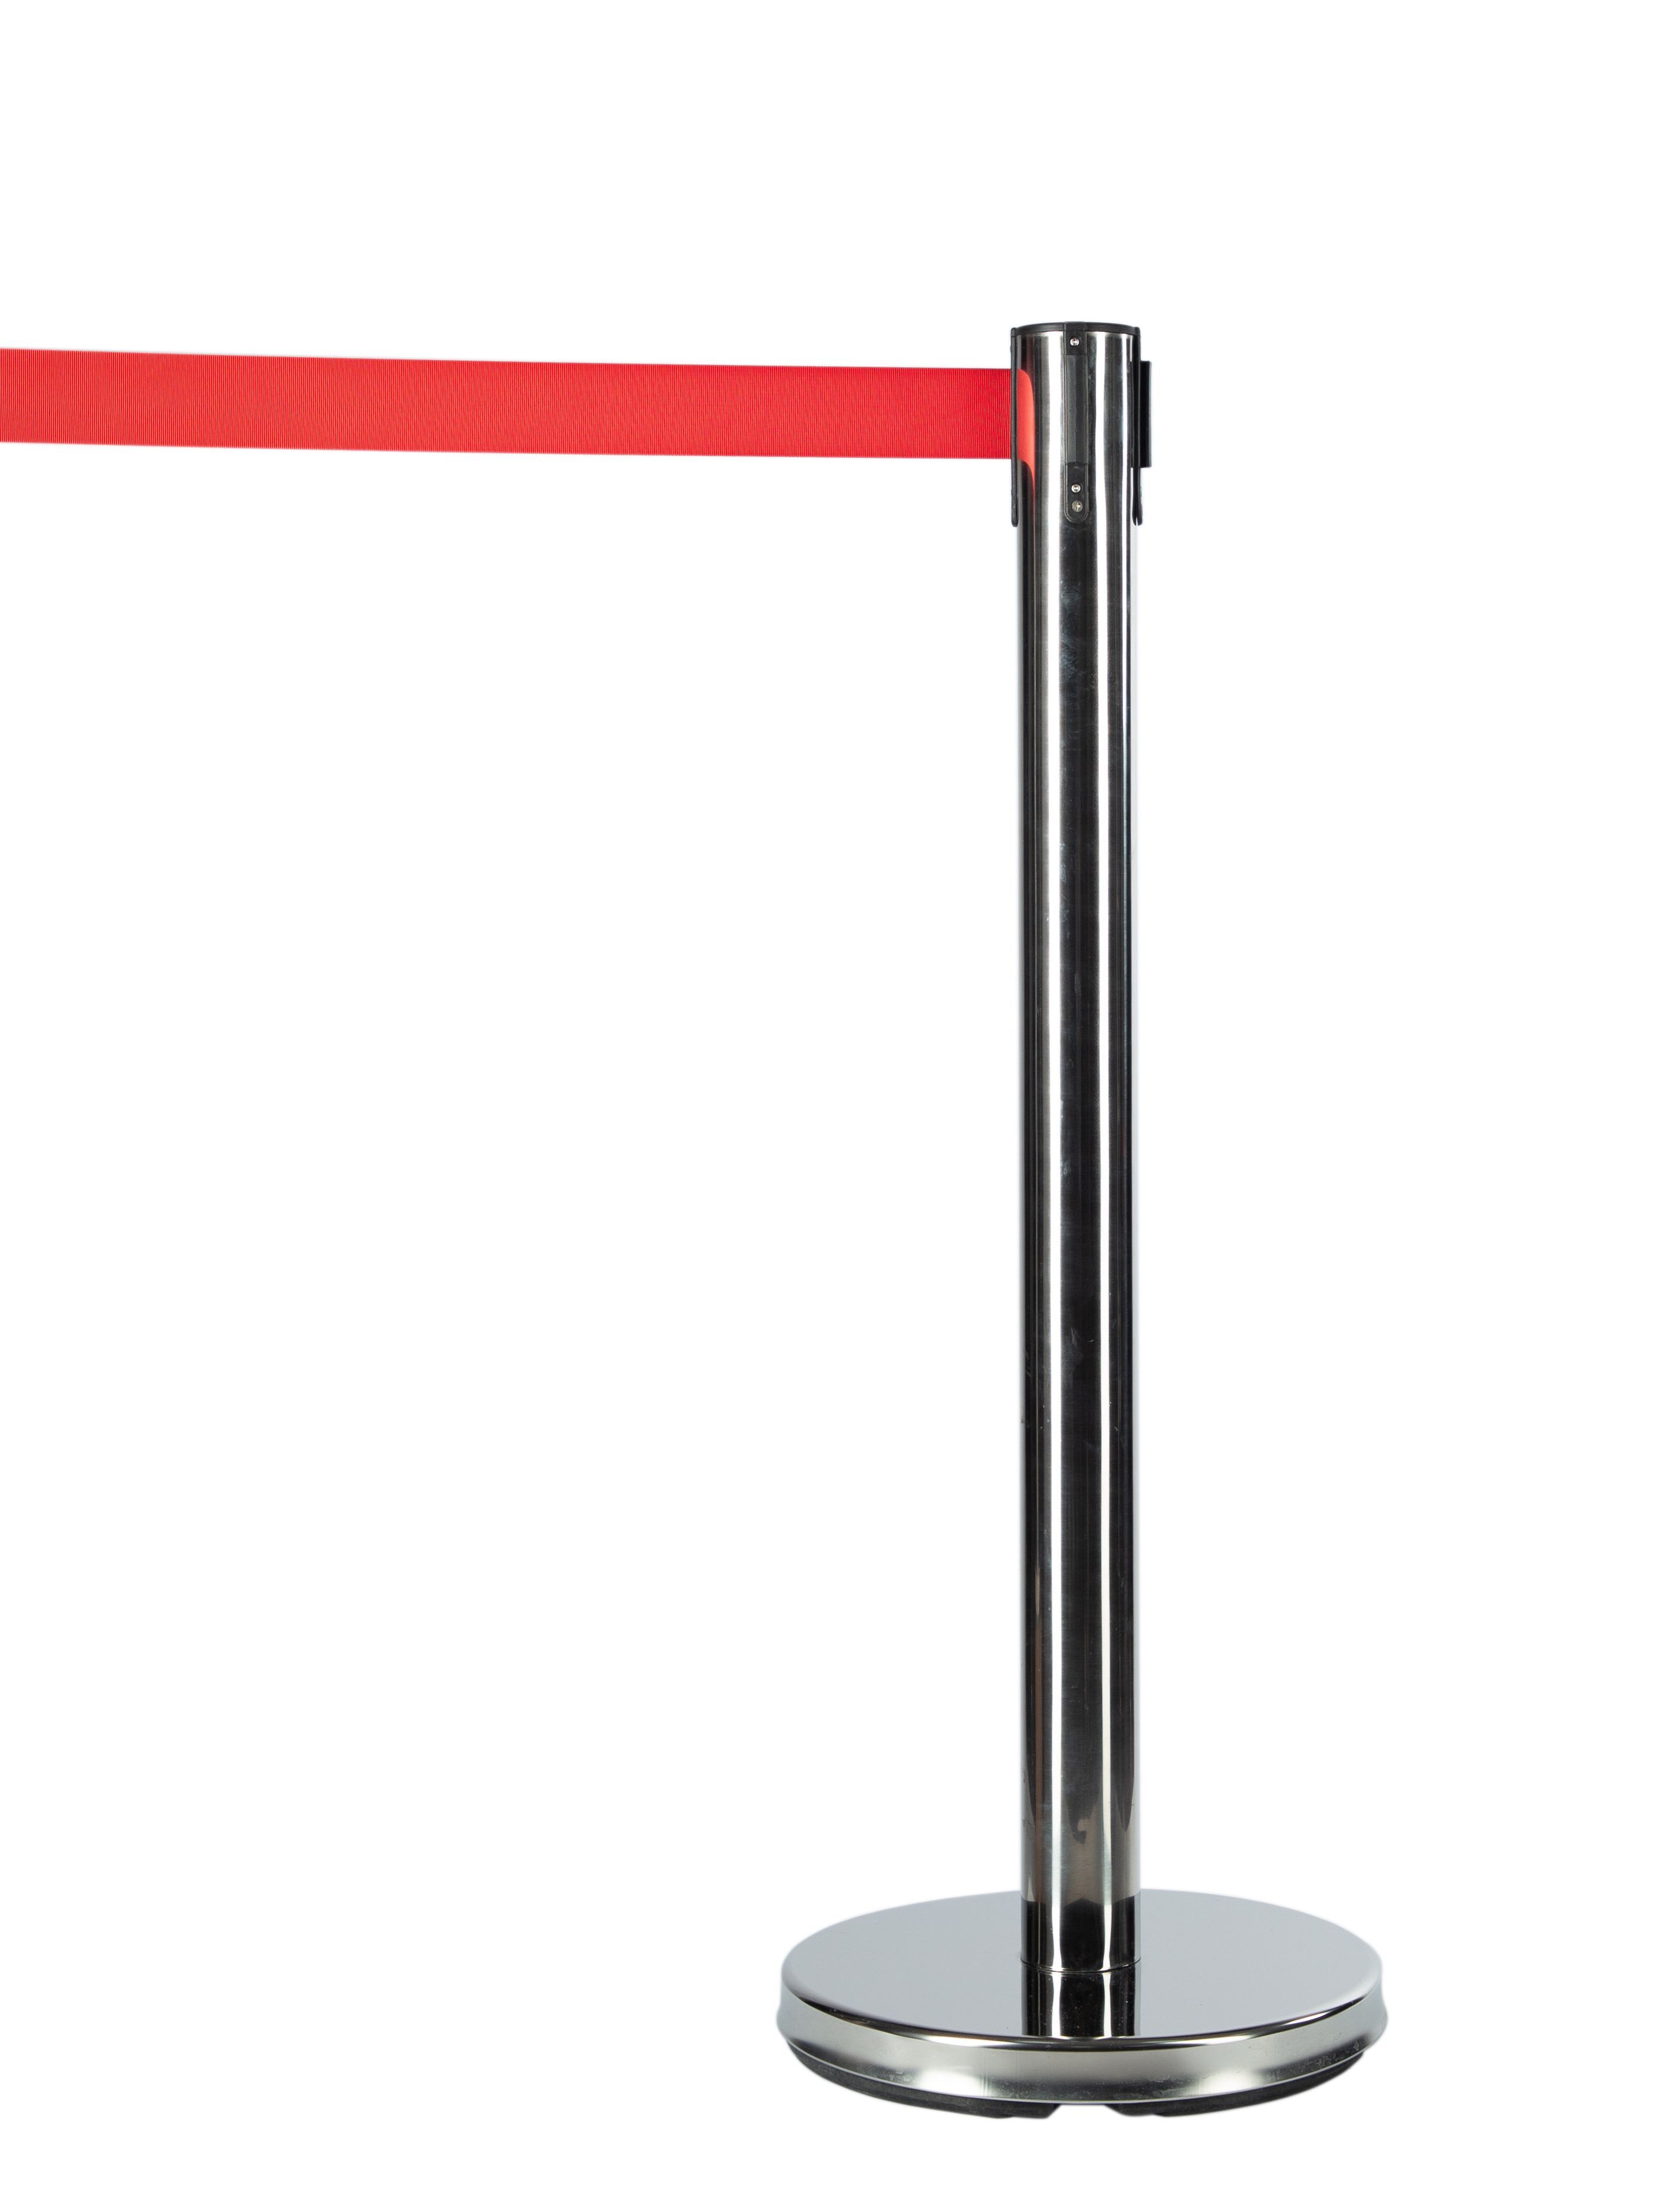 Мобильная стойка с красной лентой 5 метров ИП Кузин Р.С. мобильная стойка ограждения с вытяжной черной лентой 5 метров 15 1 16